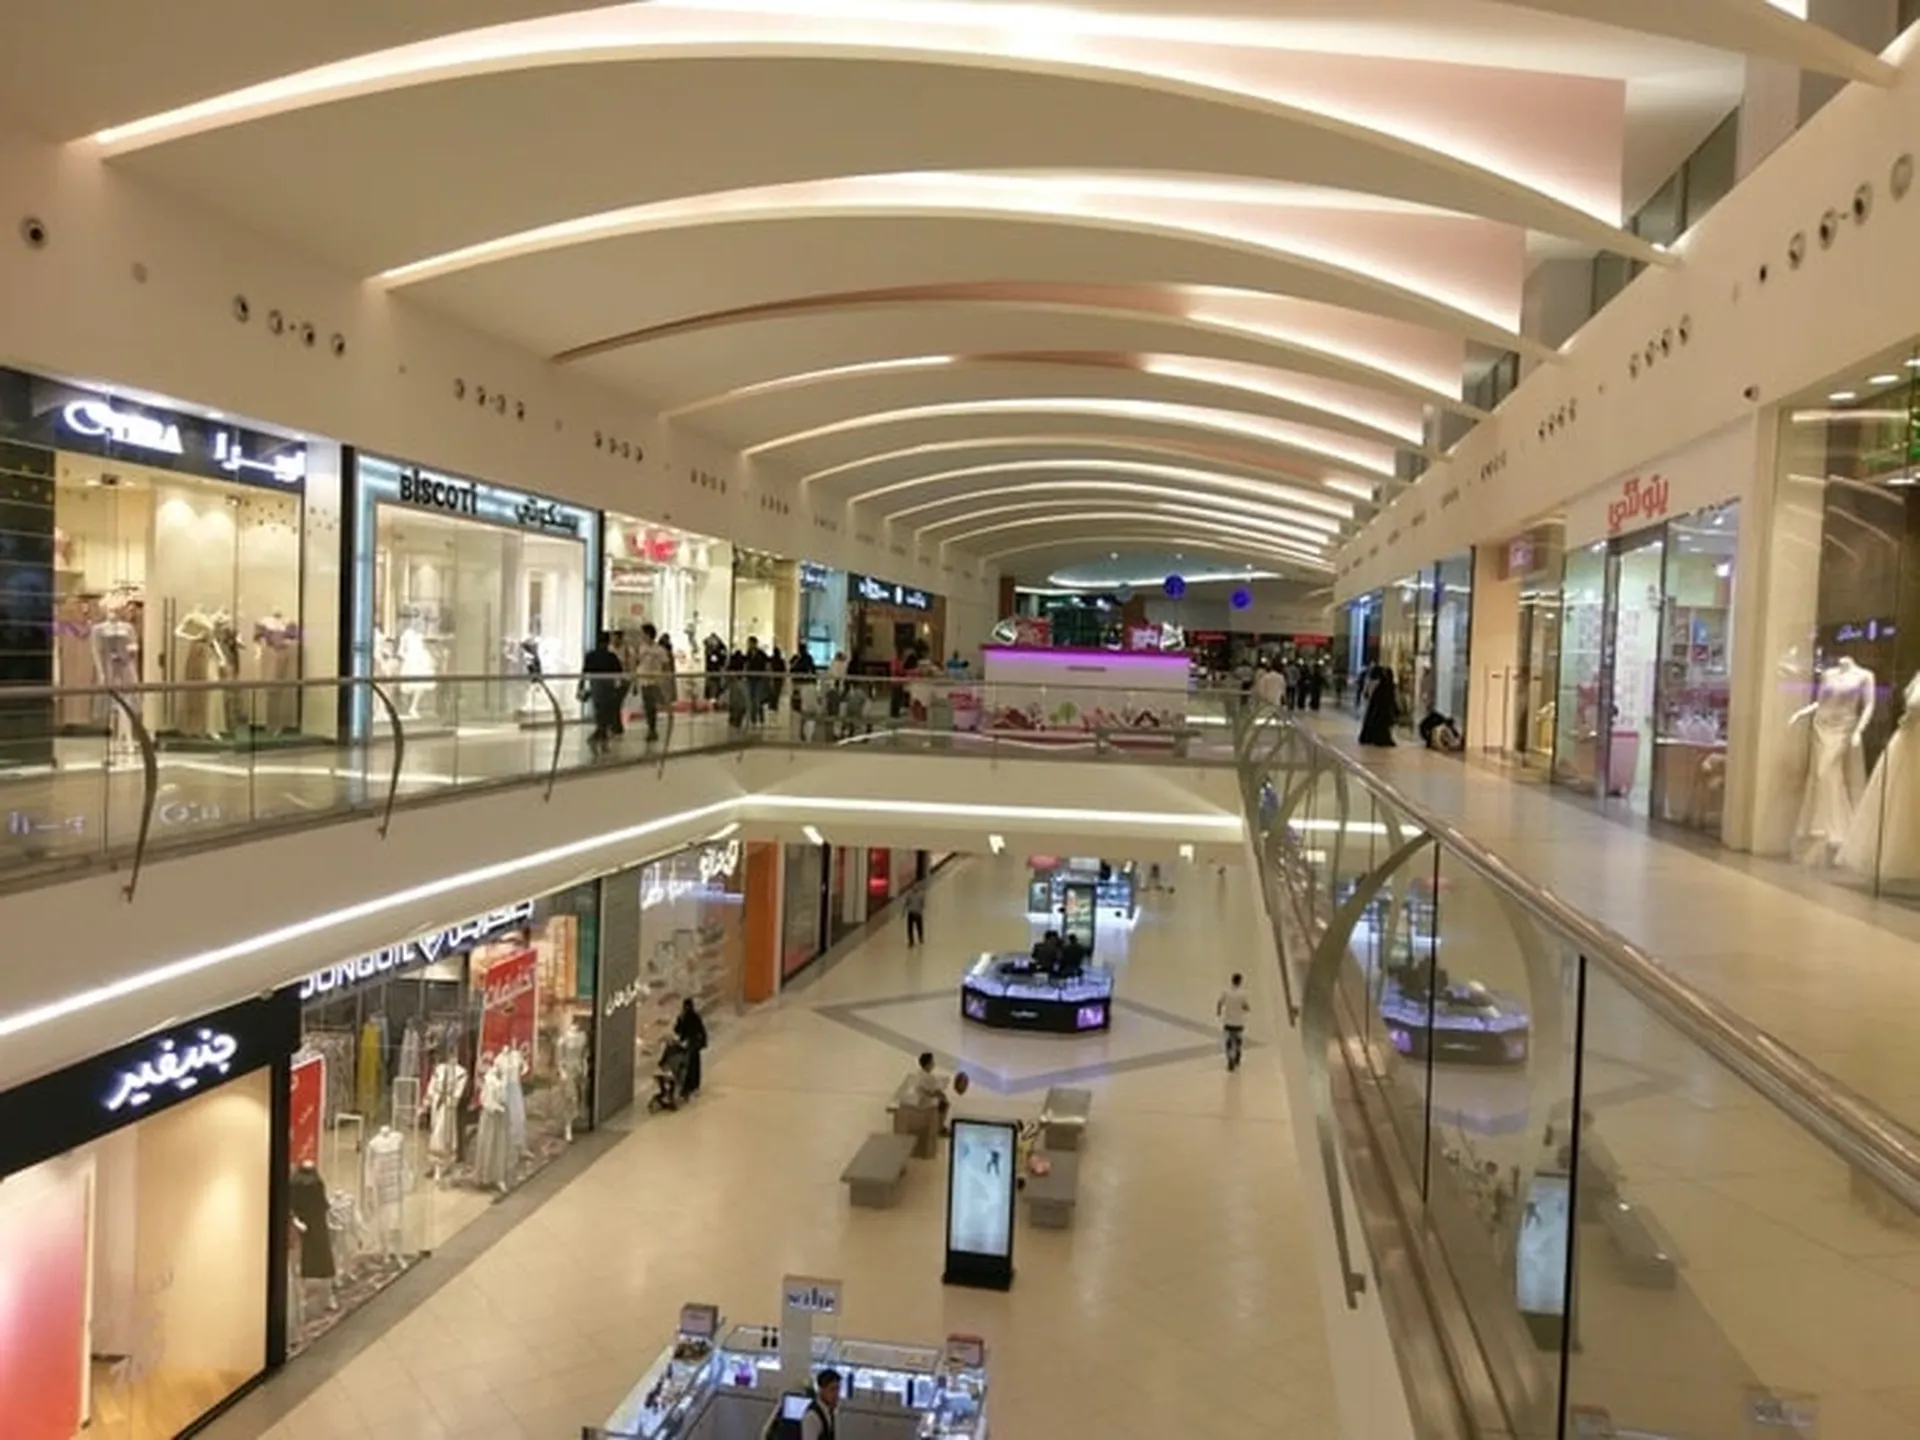 Al Noor Mall